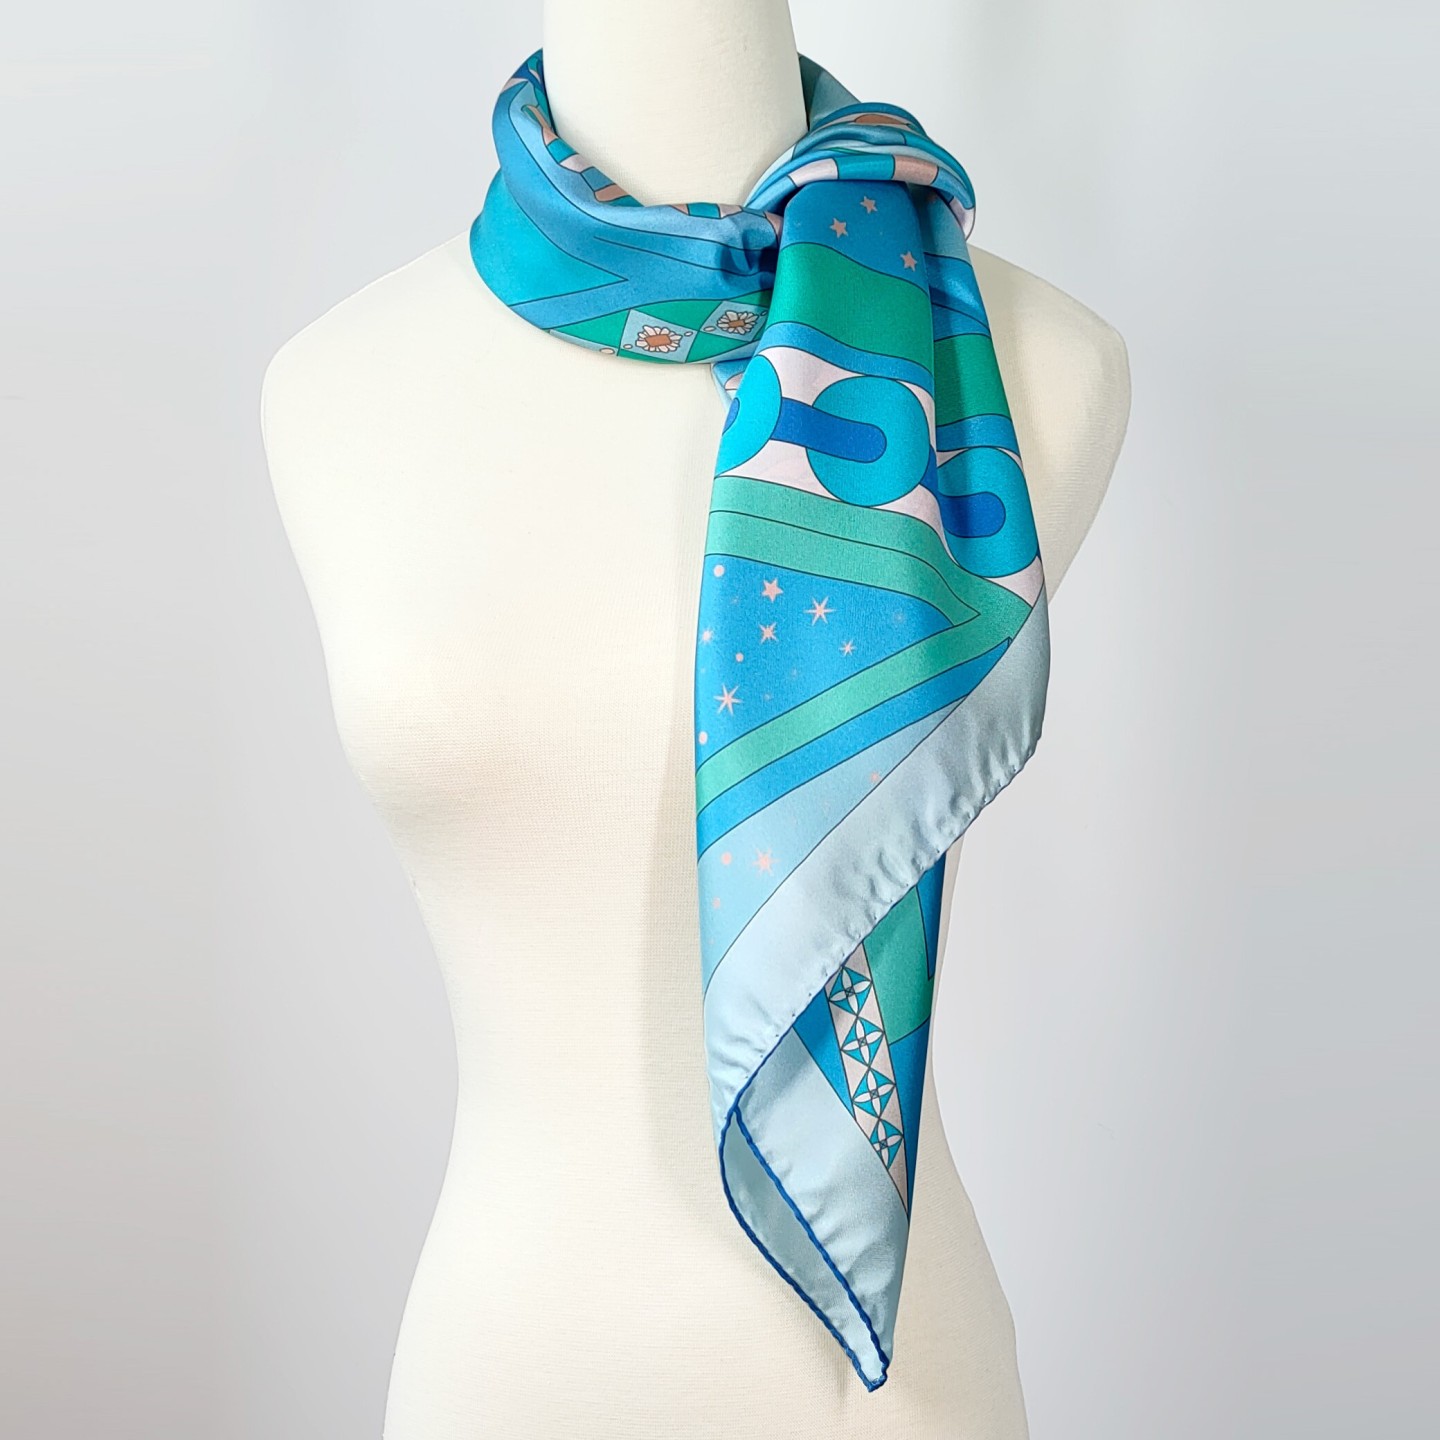 Acquista il foulard di Seta Editions Ventinove 90x90 cm!